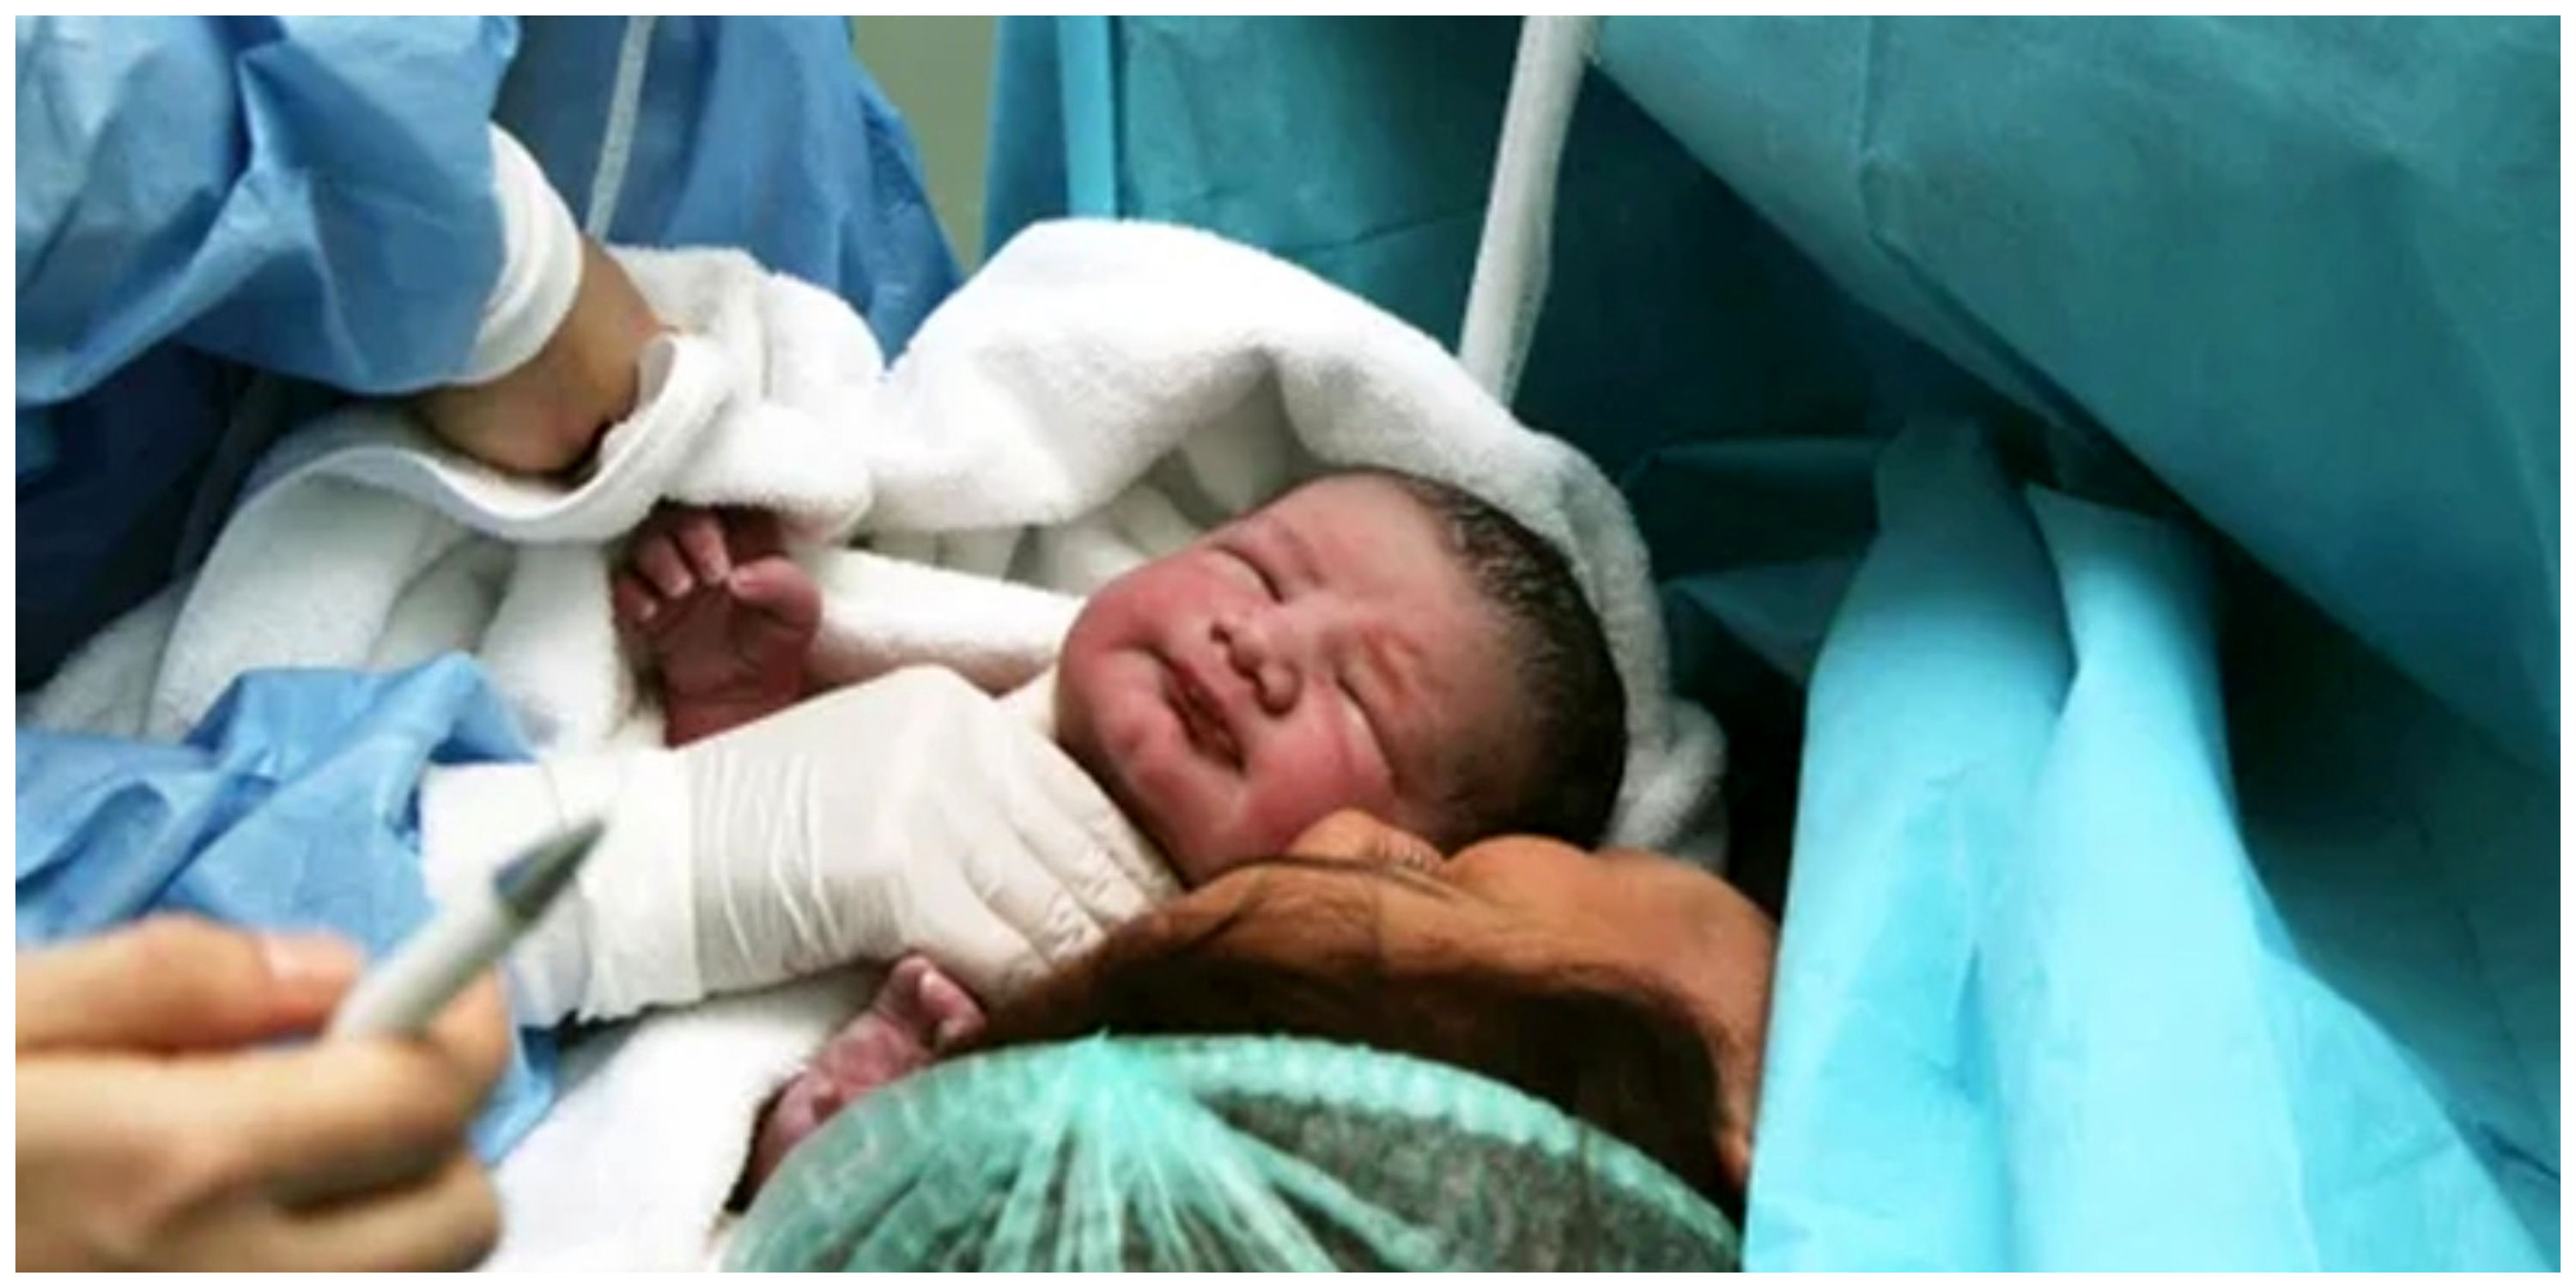 هشدار وزارت بهداشت درباره تولد نوزادان نارس در تاریخ رُند/ مراکز درمانی اخطار گرفتند